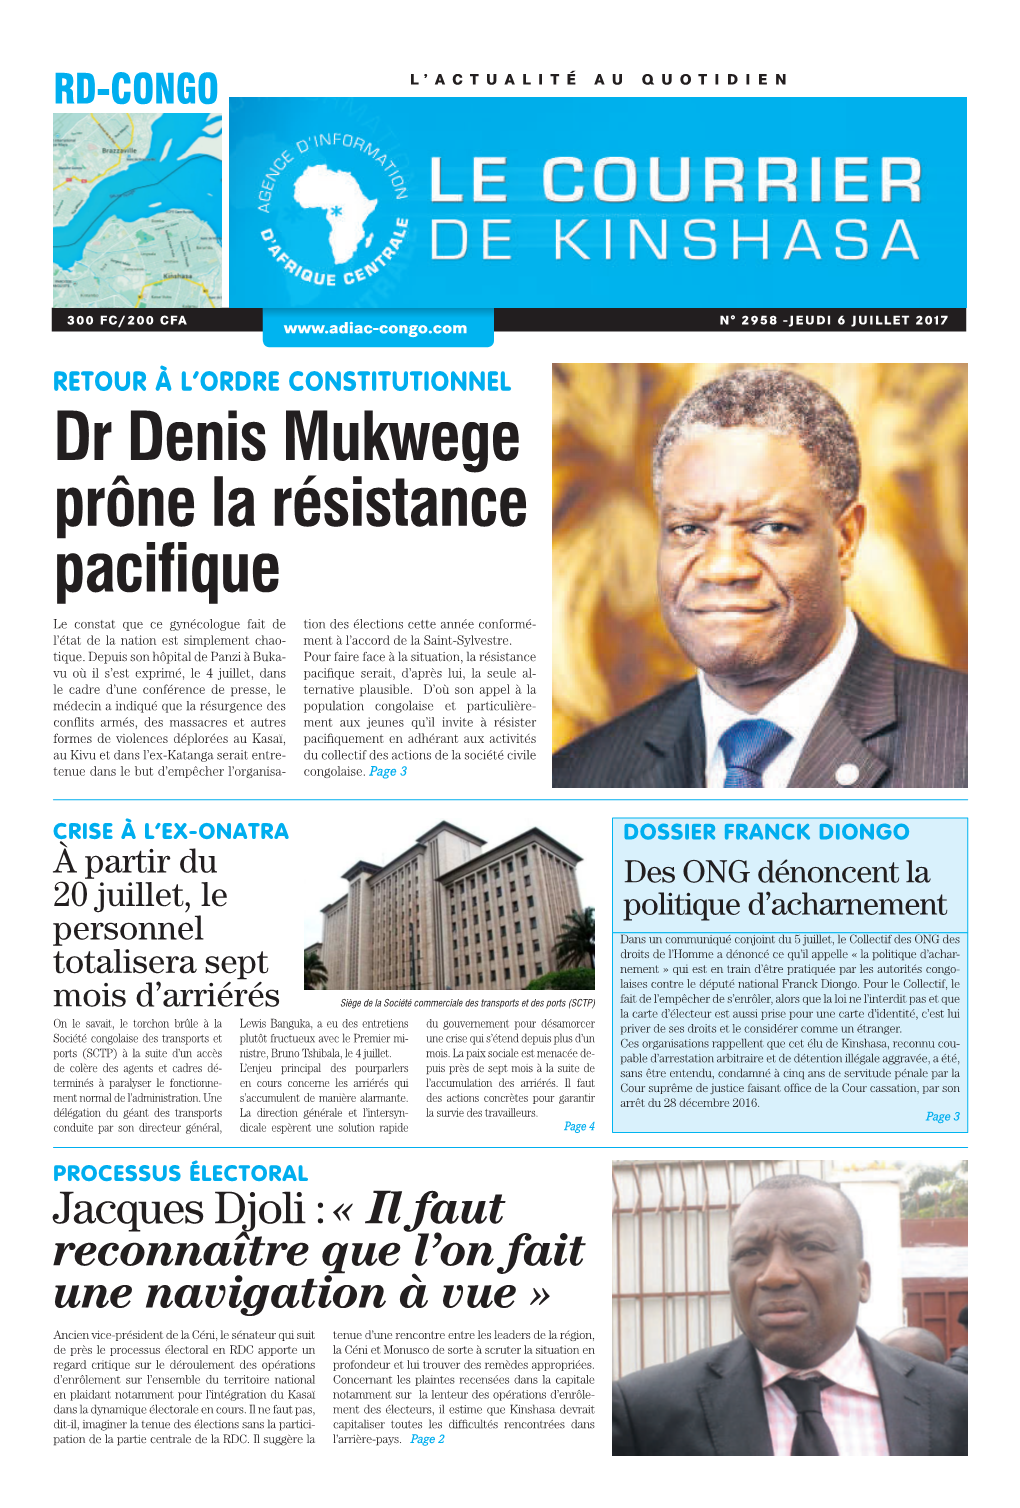 Dr Denis Mukwege Prône La Résistance Pacifique